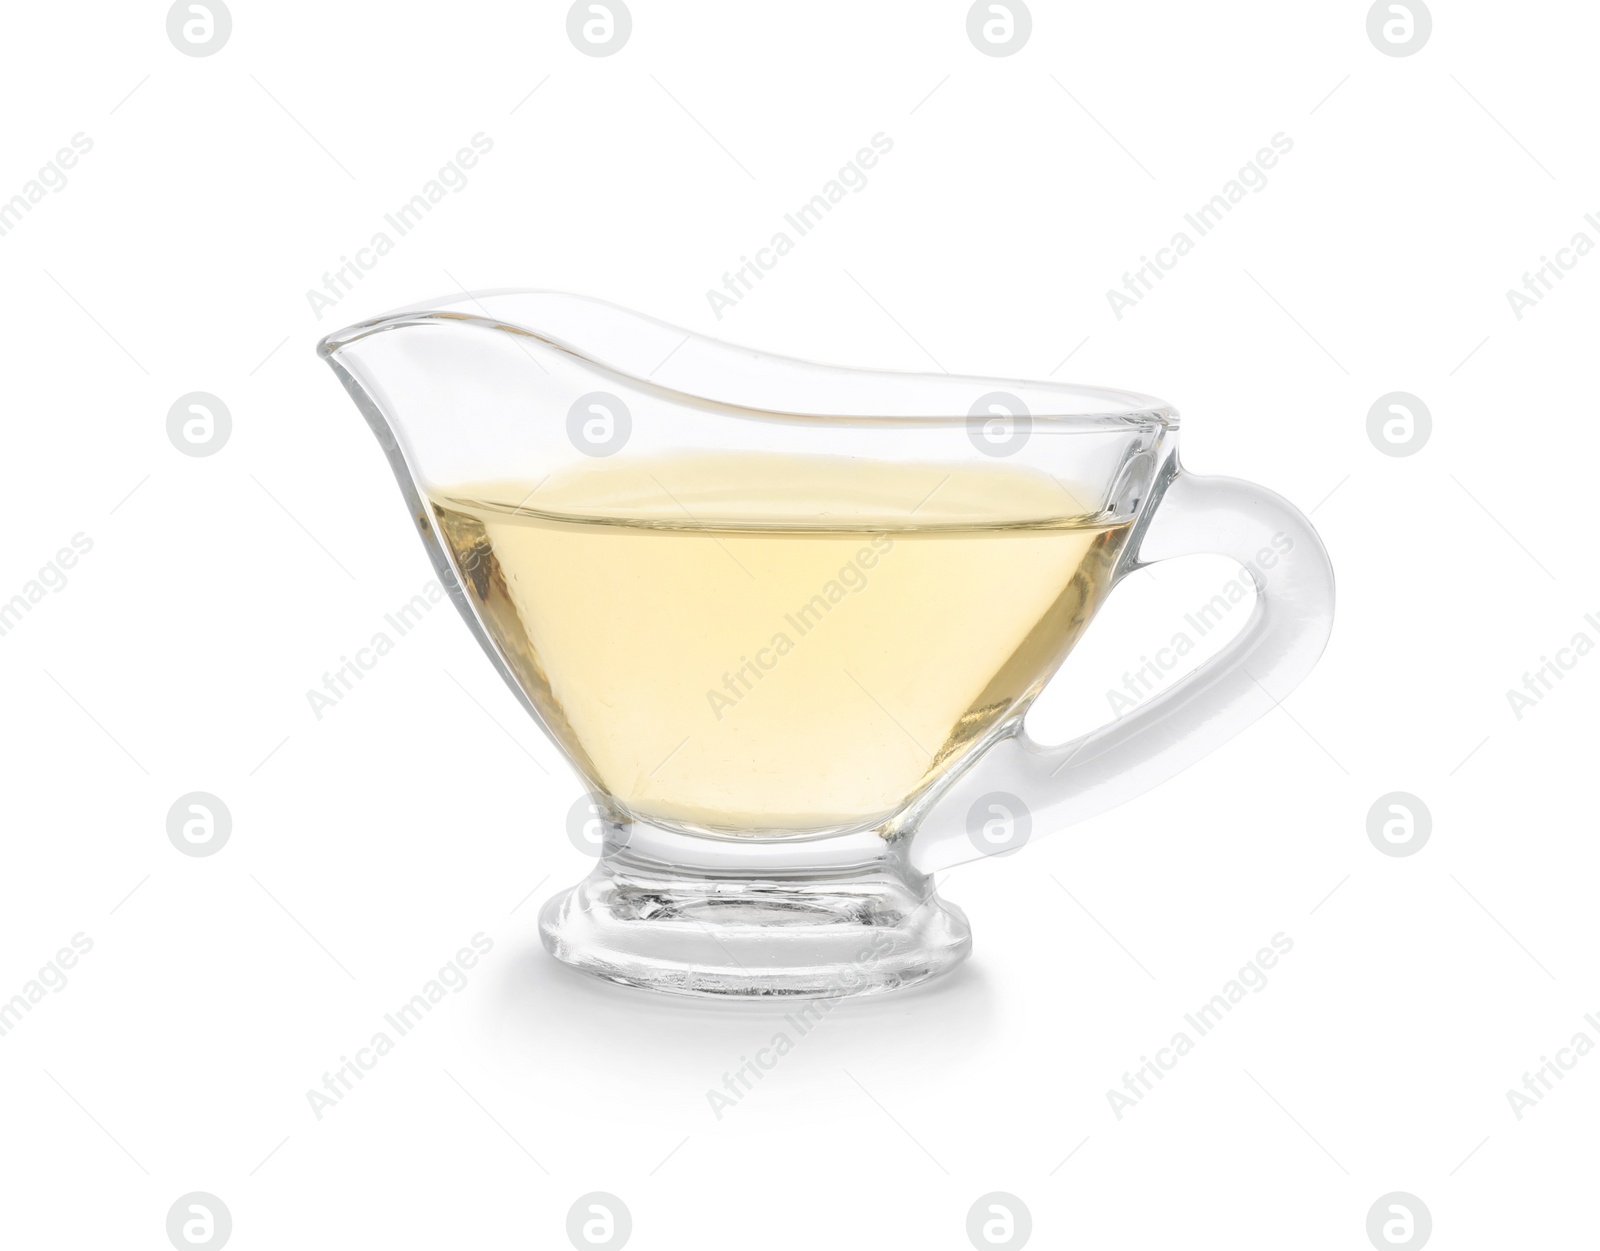 Photo of Apple vinegar in glass gravy boat on white background